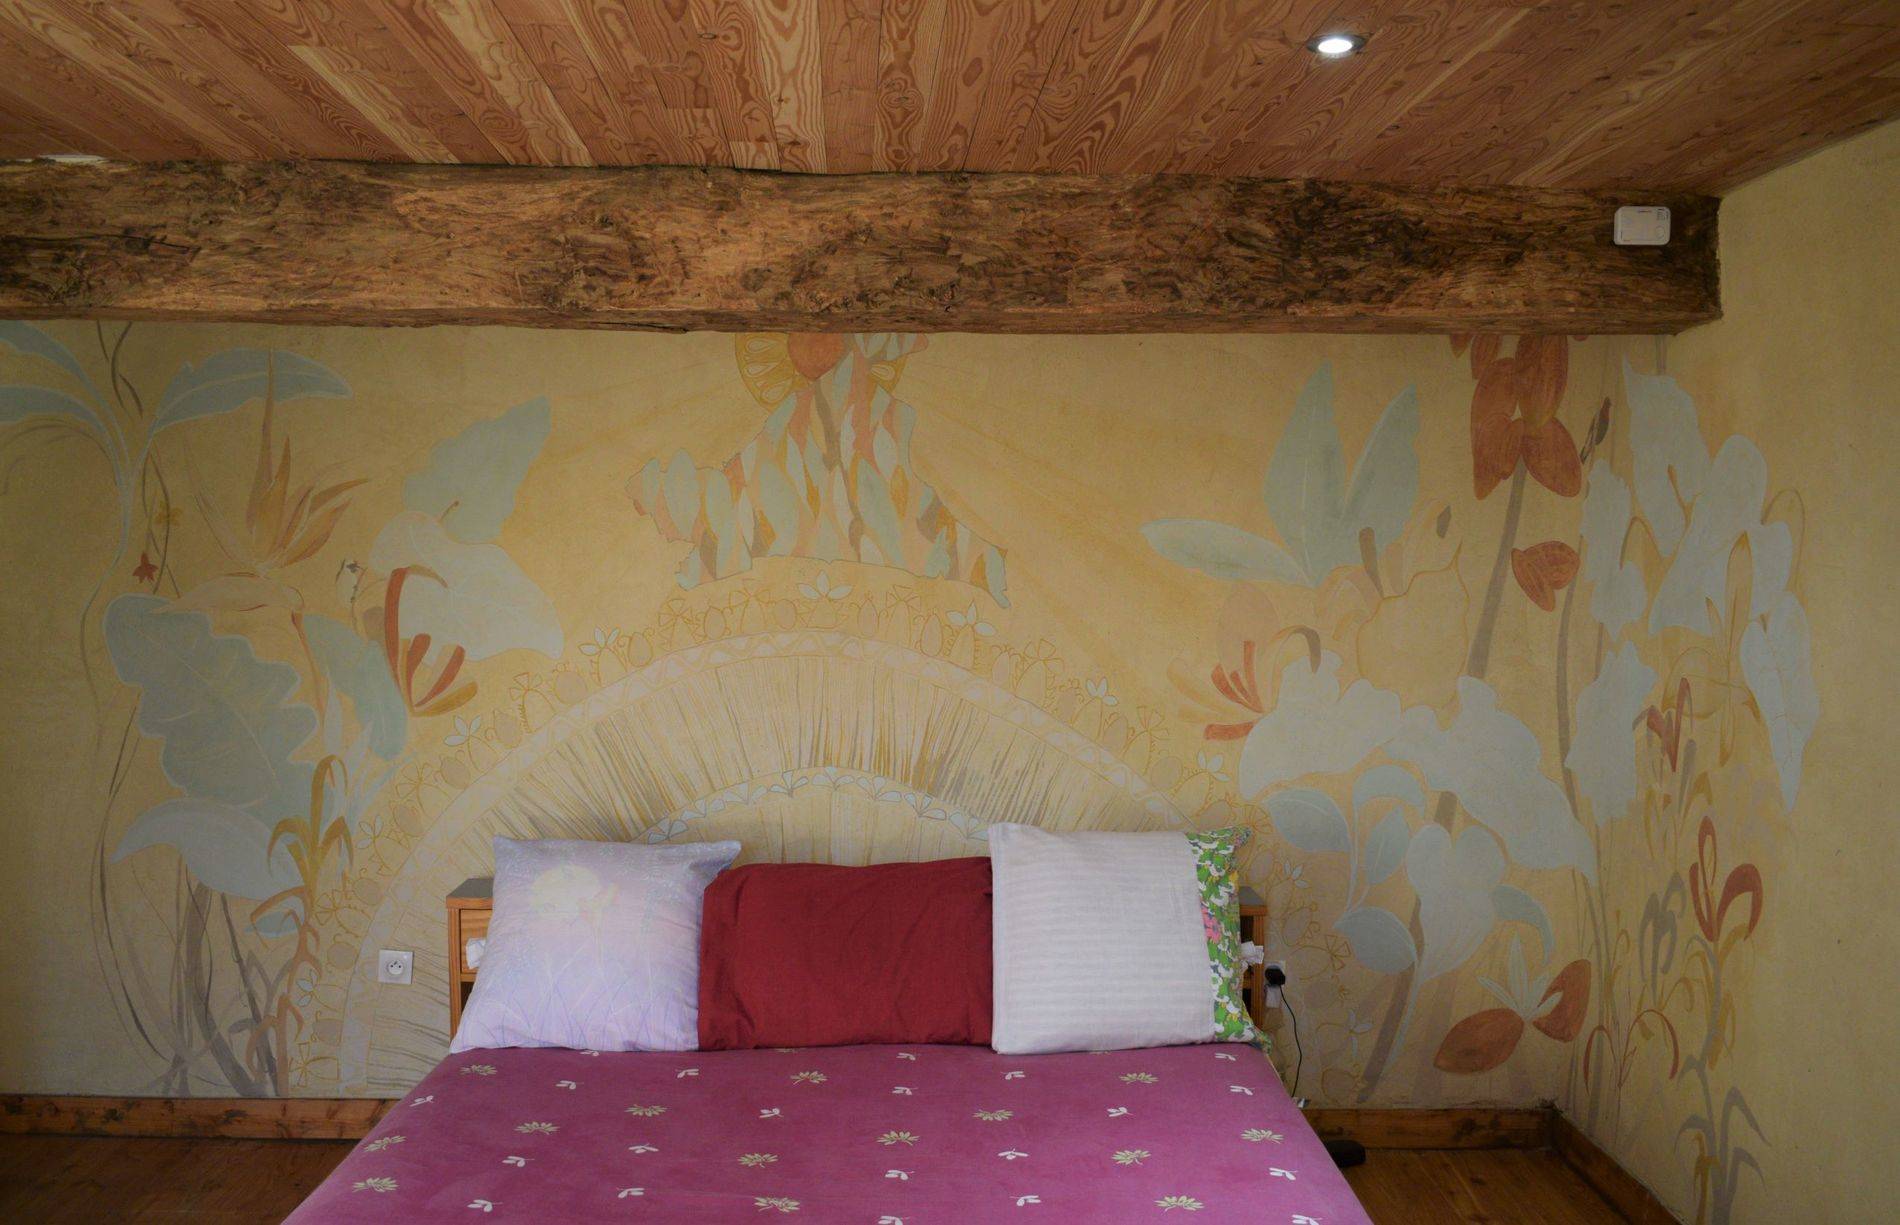 Archidixie - décor fresque peinture à l'argile sur enduit de chaux